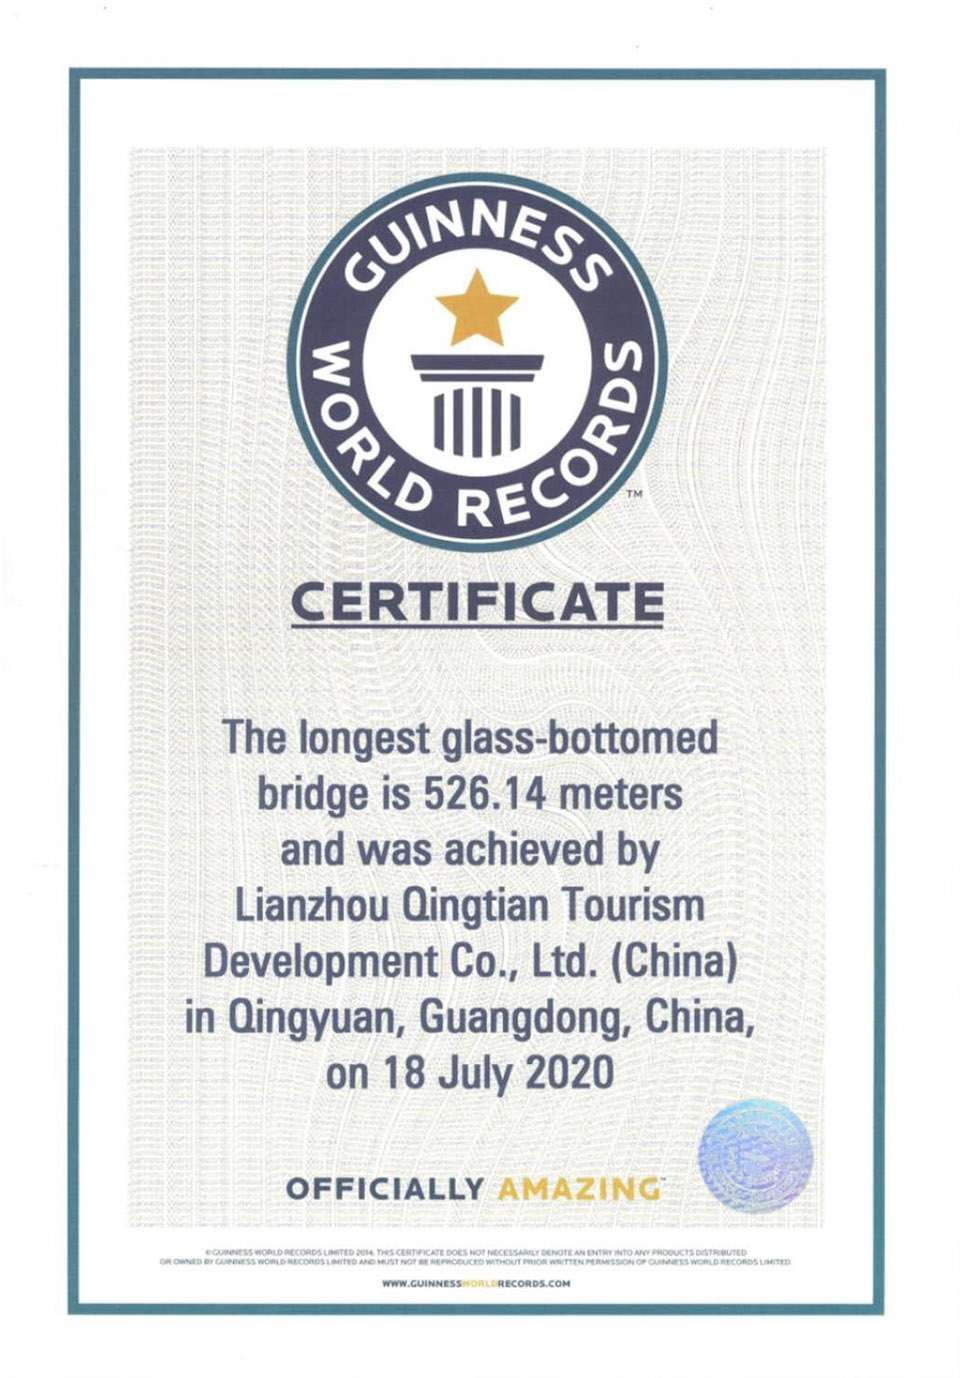 湟川三峡擎天玻璃桥，广东清远/吉尼斯纪录认证：“世界最长玻璃铺装悬索桥”-72